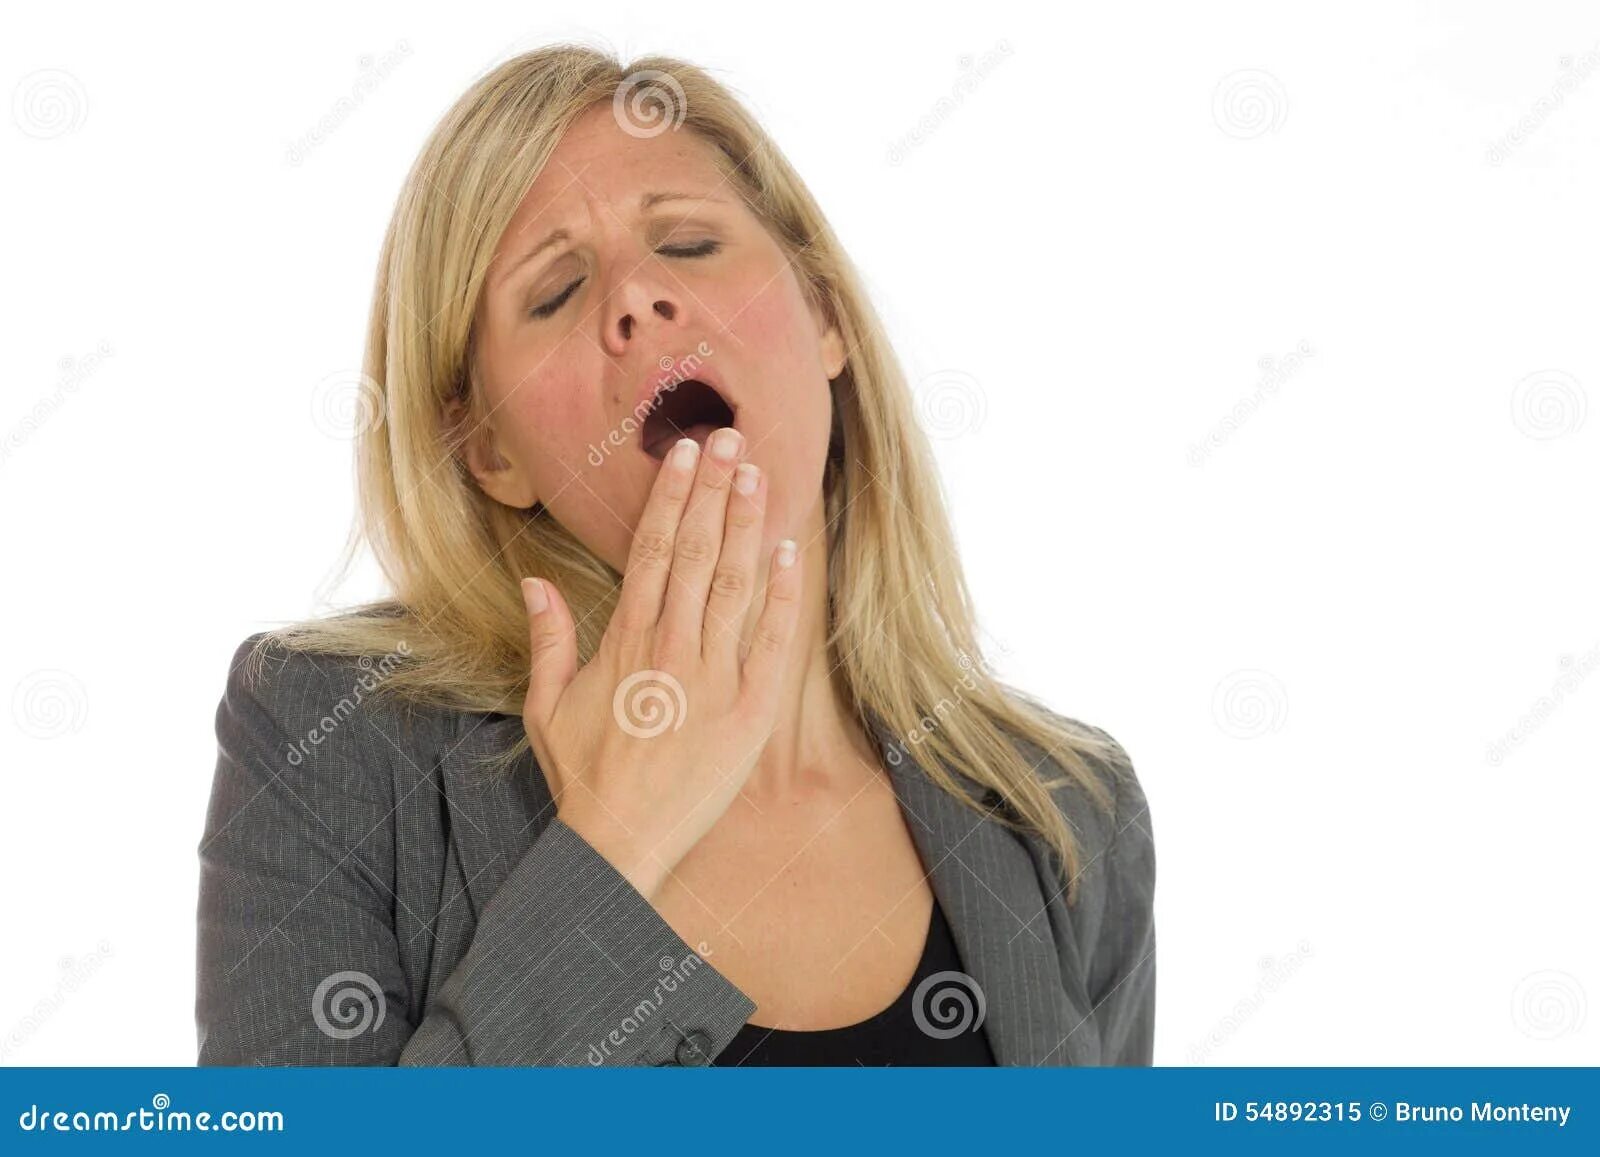 Причины частой зевоты у женщин. Женщина зевает. Часто зевает человек. Постоянно зеваю. Причины зевоты у женщин.